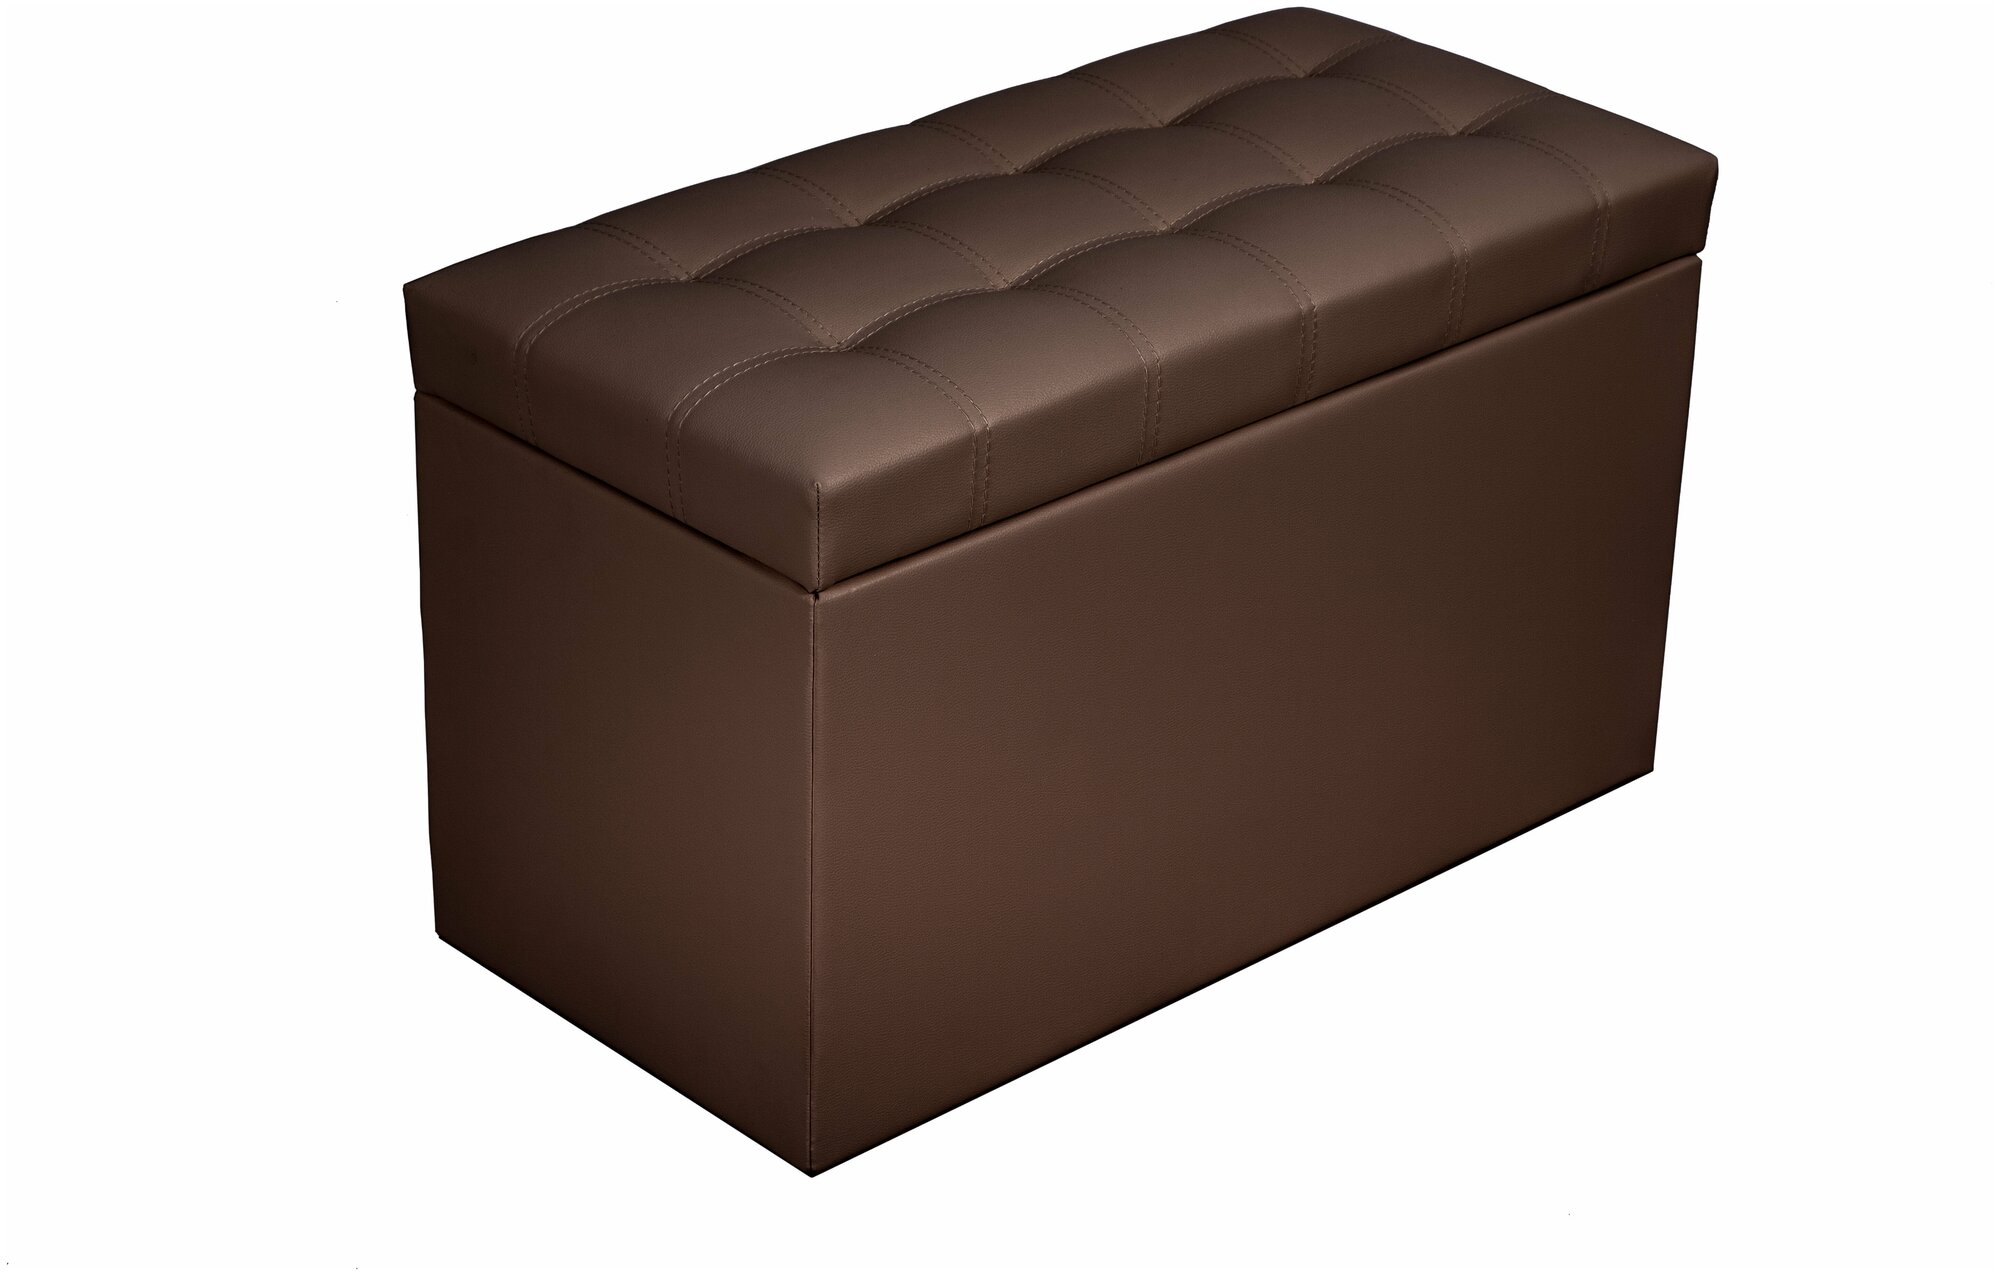 Пуфик Квадро 2, BONMEBEL, коричневый, 74х36х44, пуф с ящиком для хранения, экокожа, пуфик в прихожую, мебель